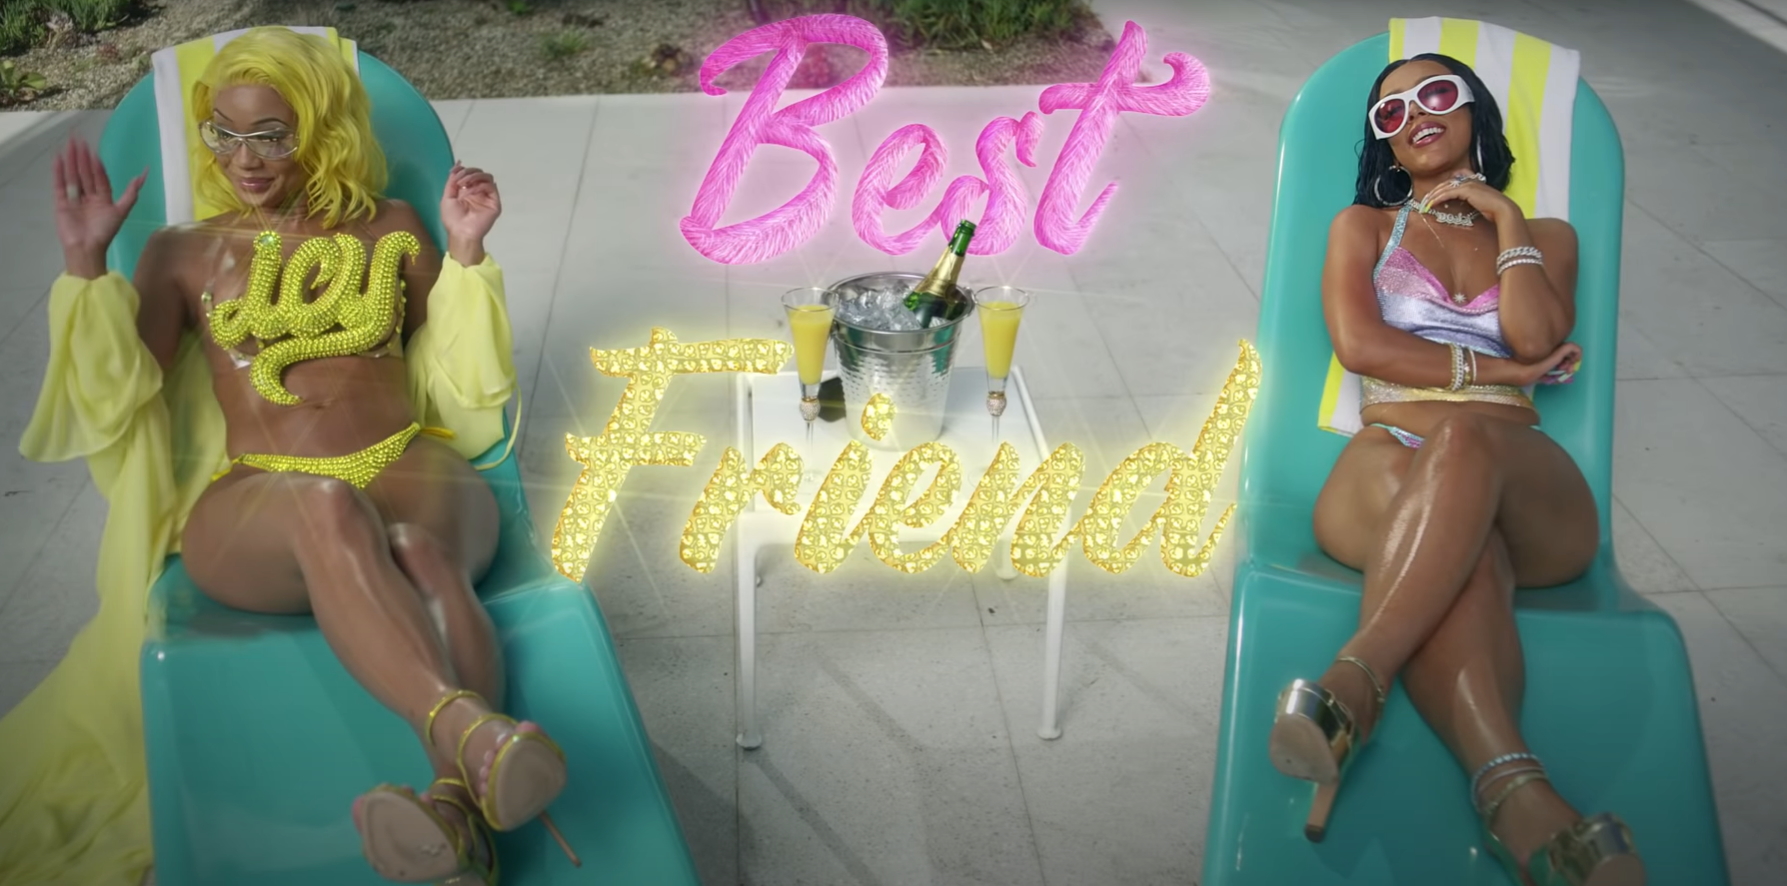 Saweetie & Doja Cat's "Best Friend" Rises On US iTunes Sales Chart